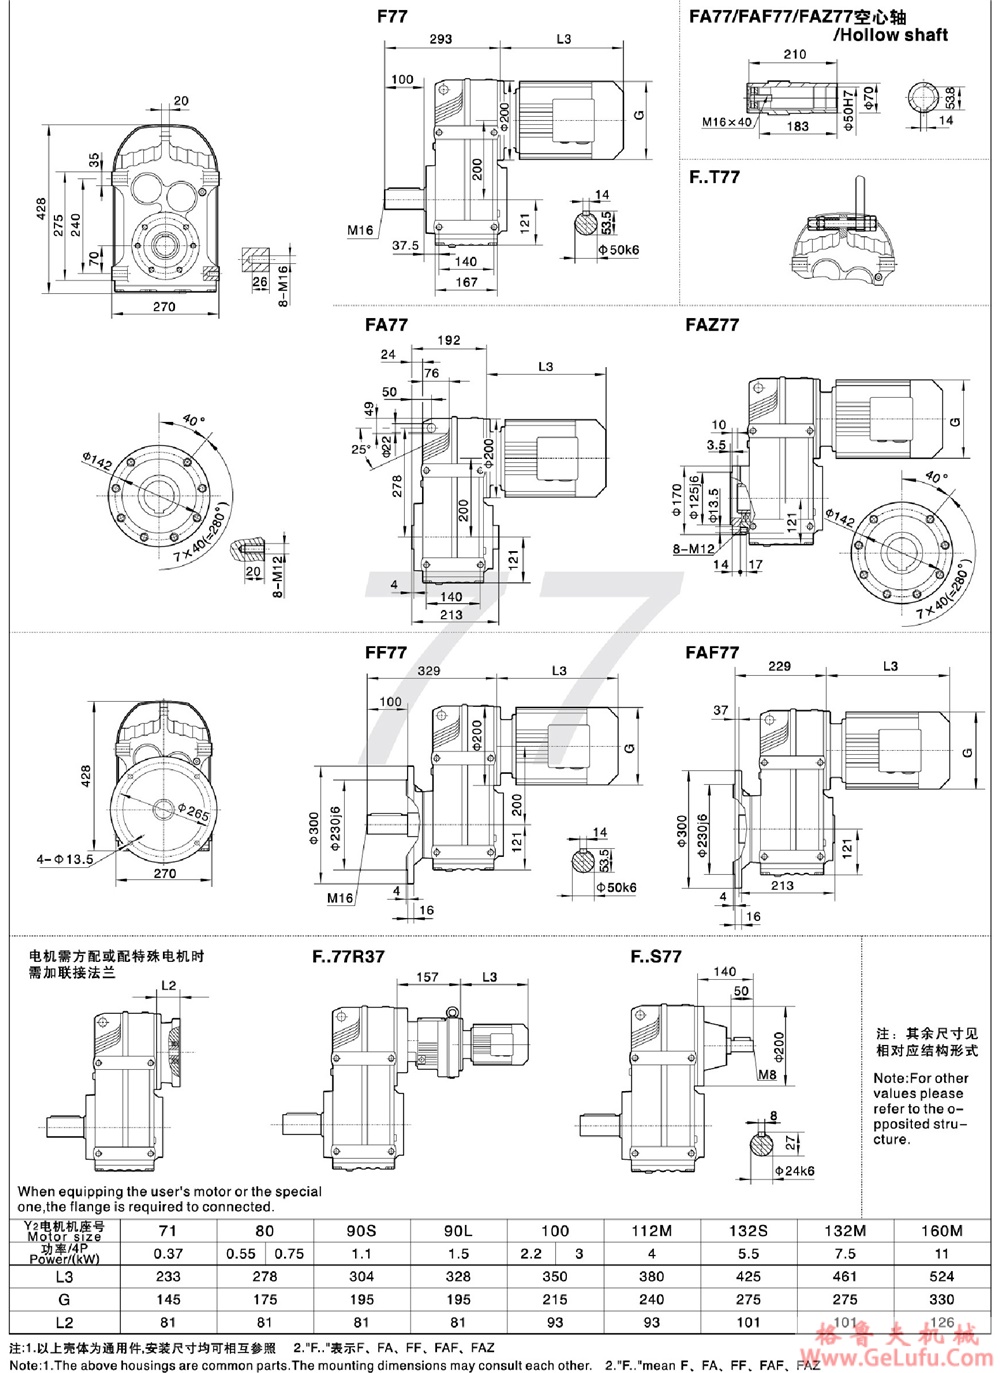 F107、FA107、FF107、FAF107、FAZ127、FS107、FAS107、FFS107、FAFS107、FAZS107平行轴斜齿轮减速电机(图29)